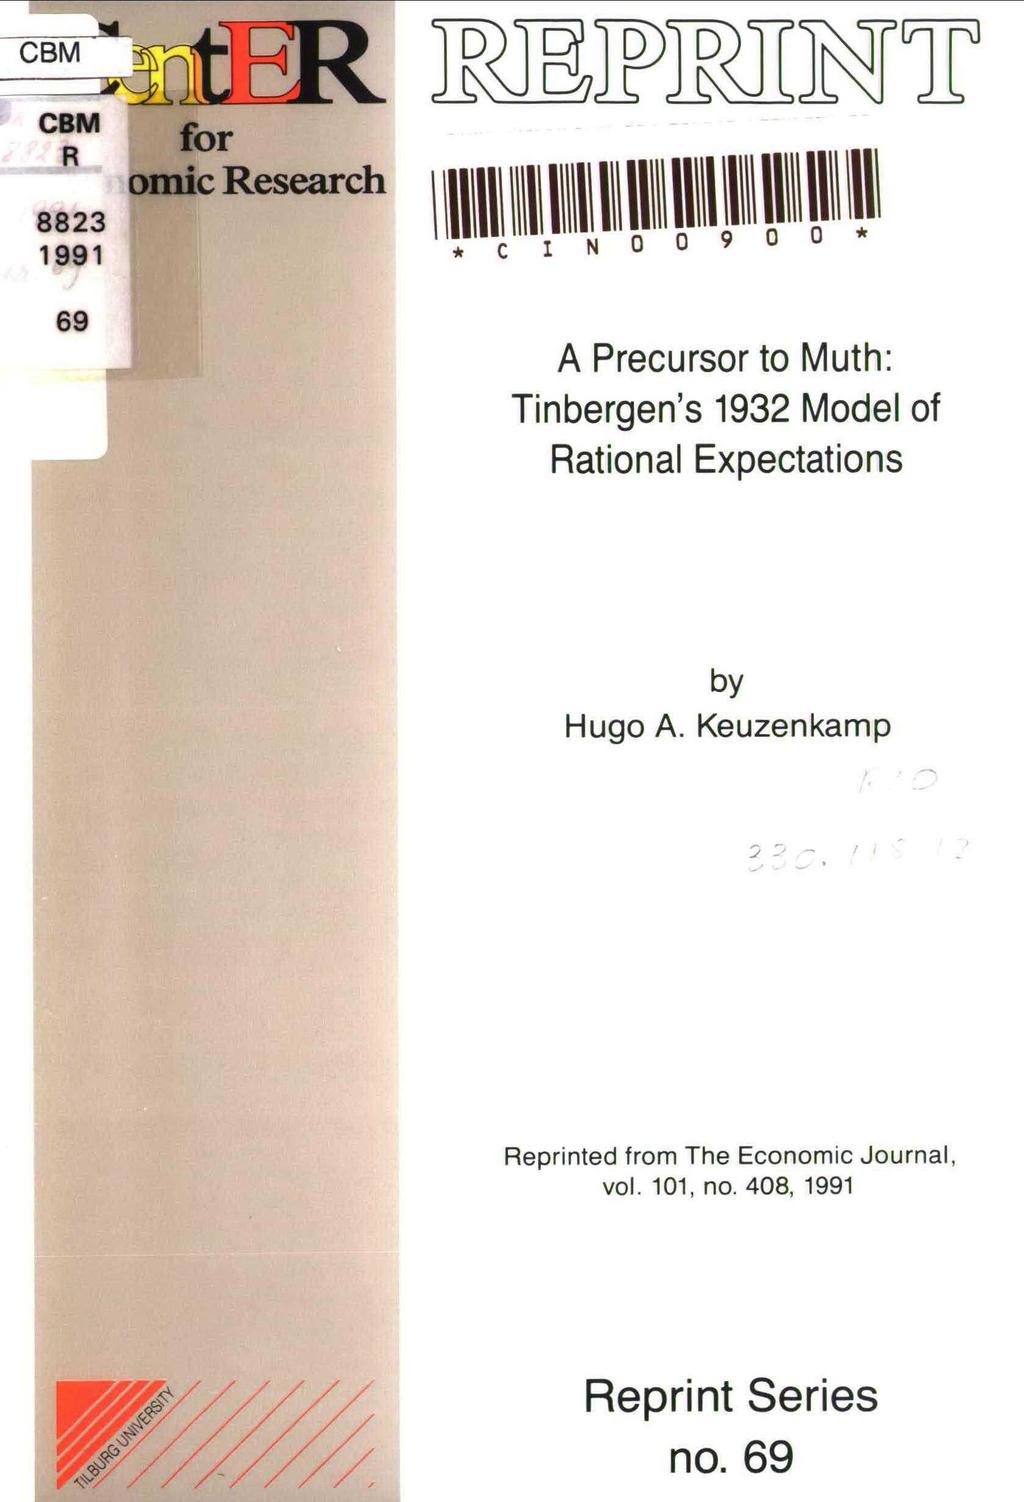 --~~ - CBM cbm for 1881 o~`"`s`a"" IIIIIIIIIIIIIqInIhI I~INInI~I IIIII NIIIIII 69 A Precursor to Muth: Tinbergen's 1932 Model